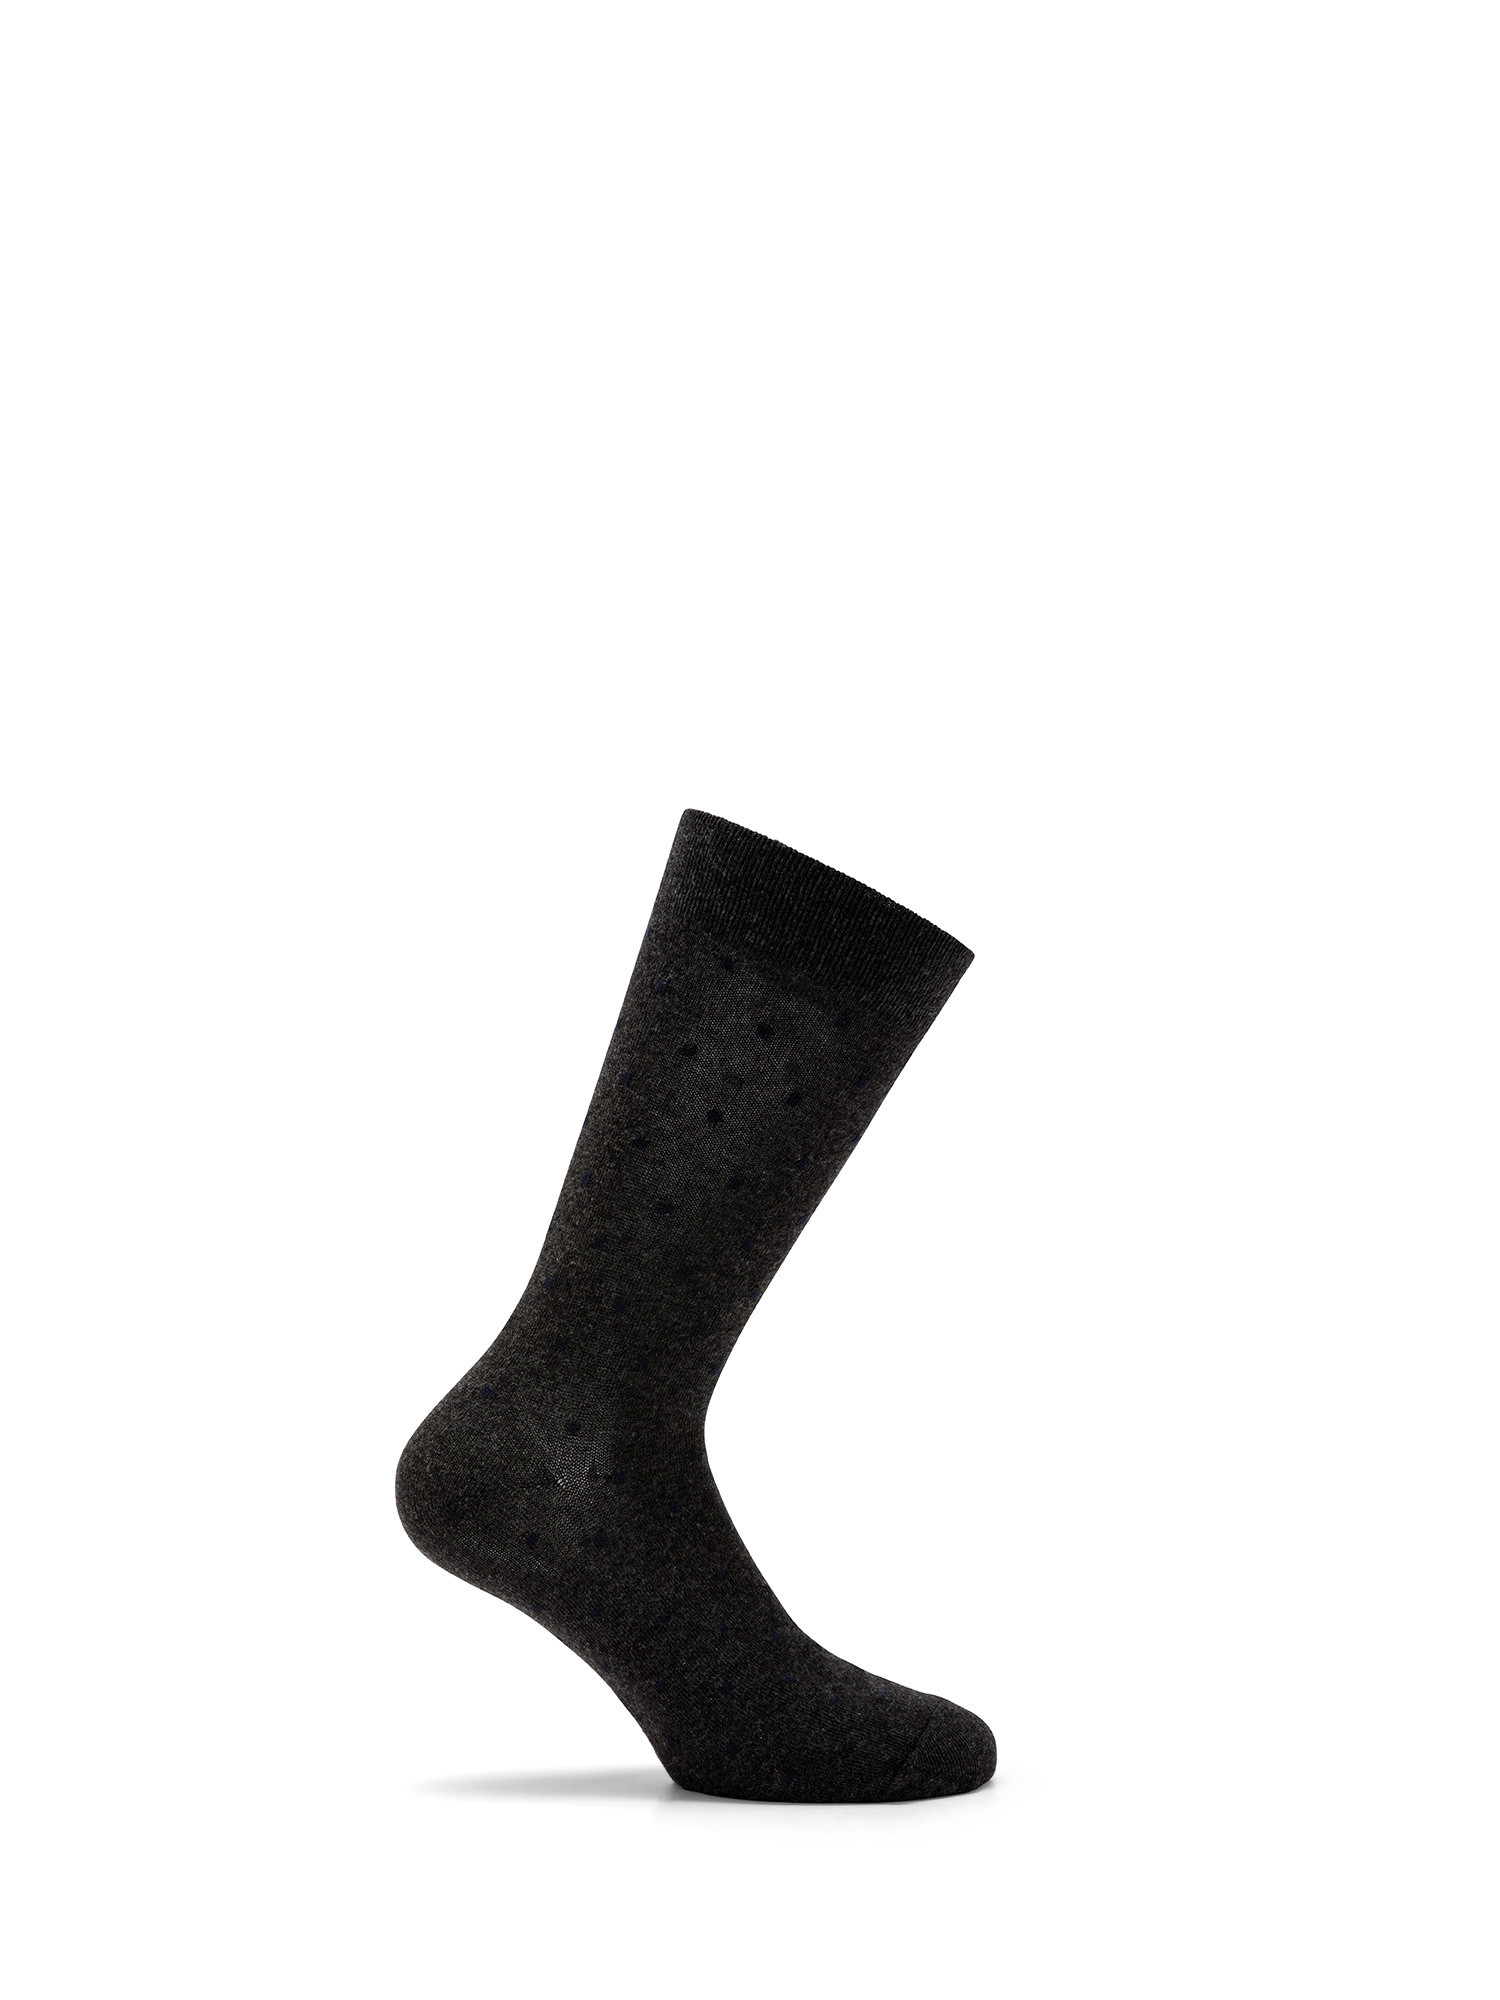 Luca D'Altieri - Set of 3 patterned short socks, Grey, large image number 3